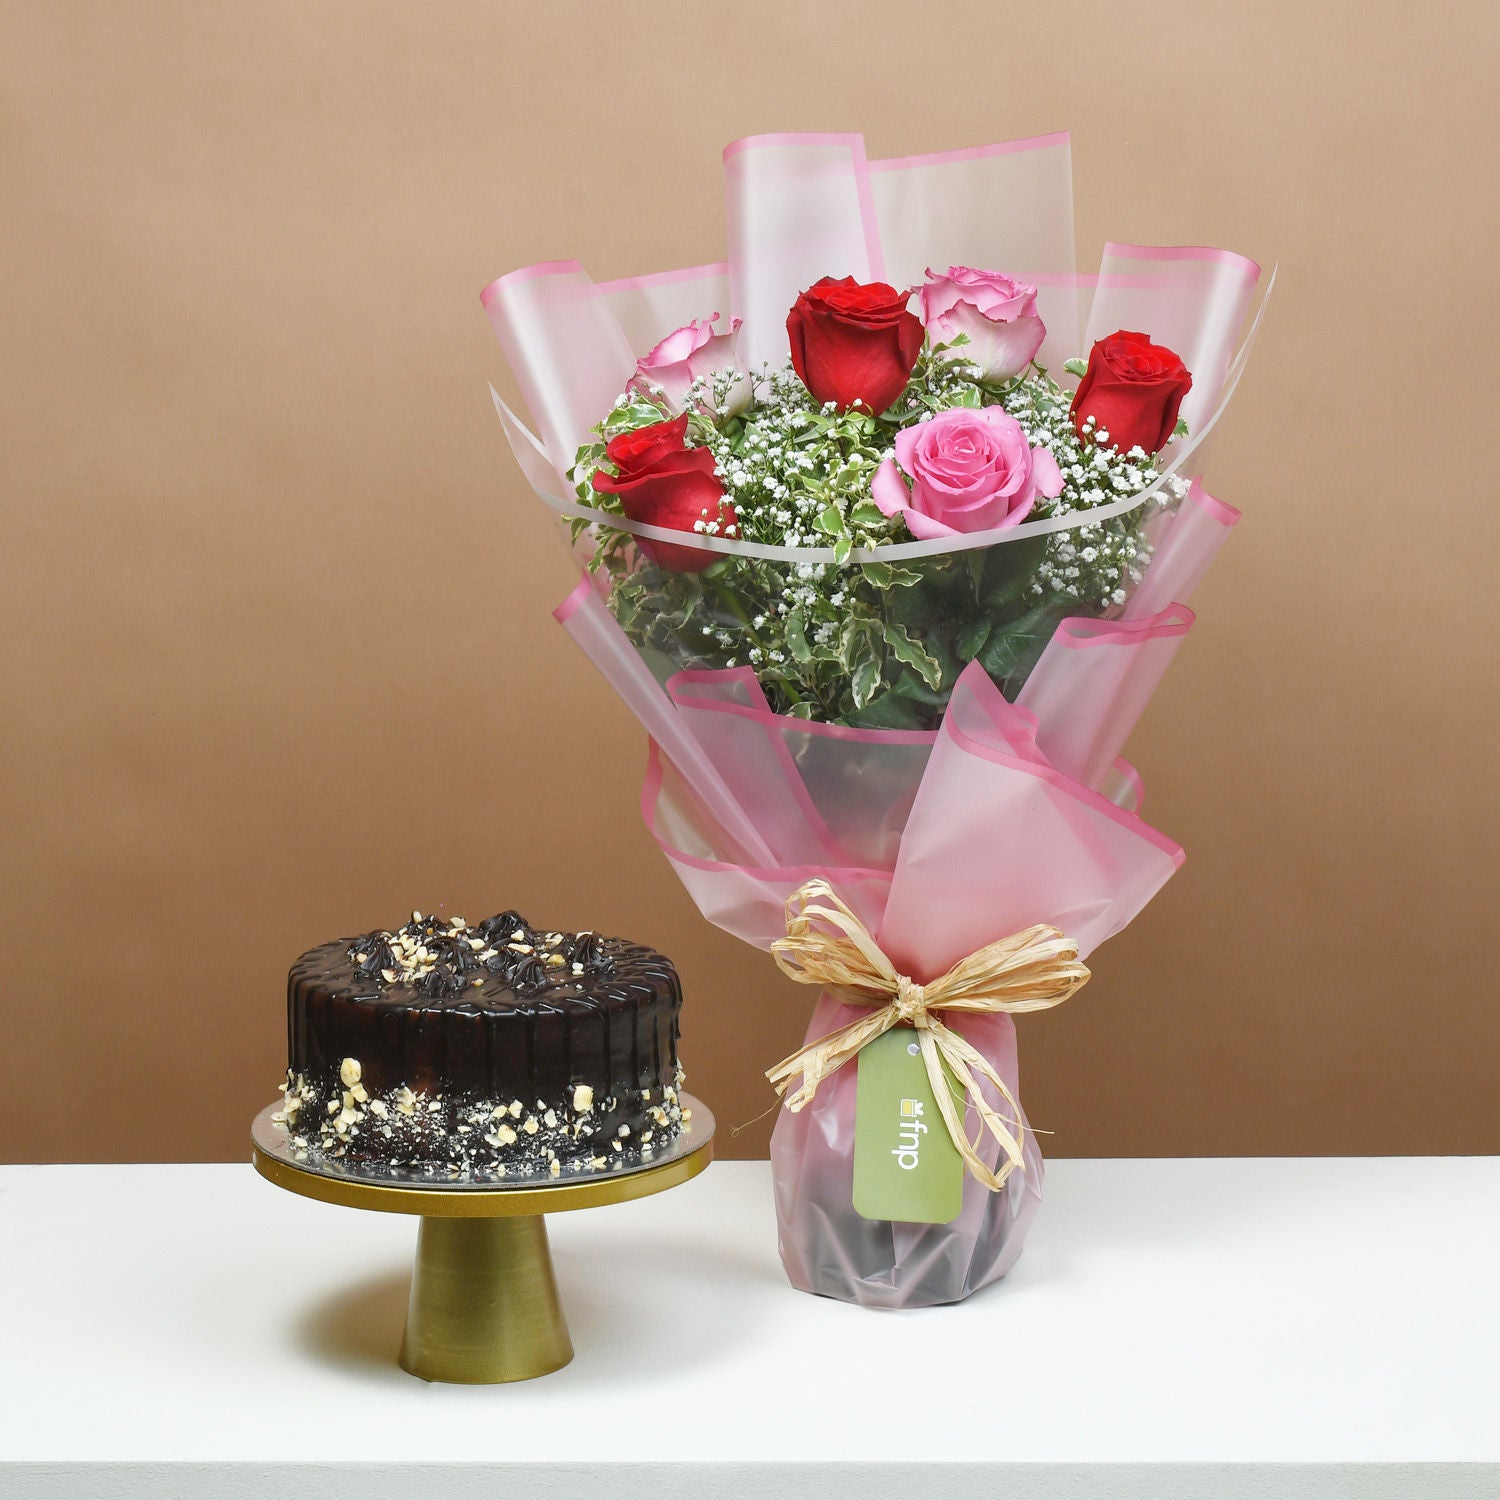 Loves Blushing Roses & Chocolate Hazelnut Cake